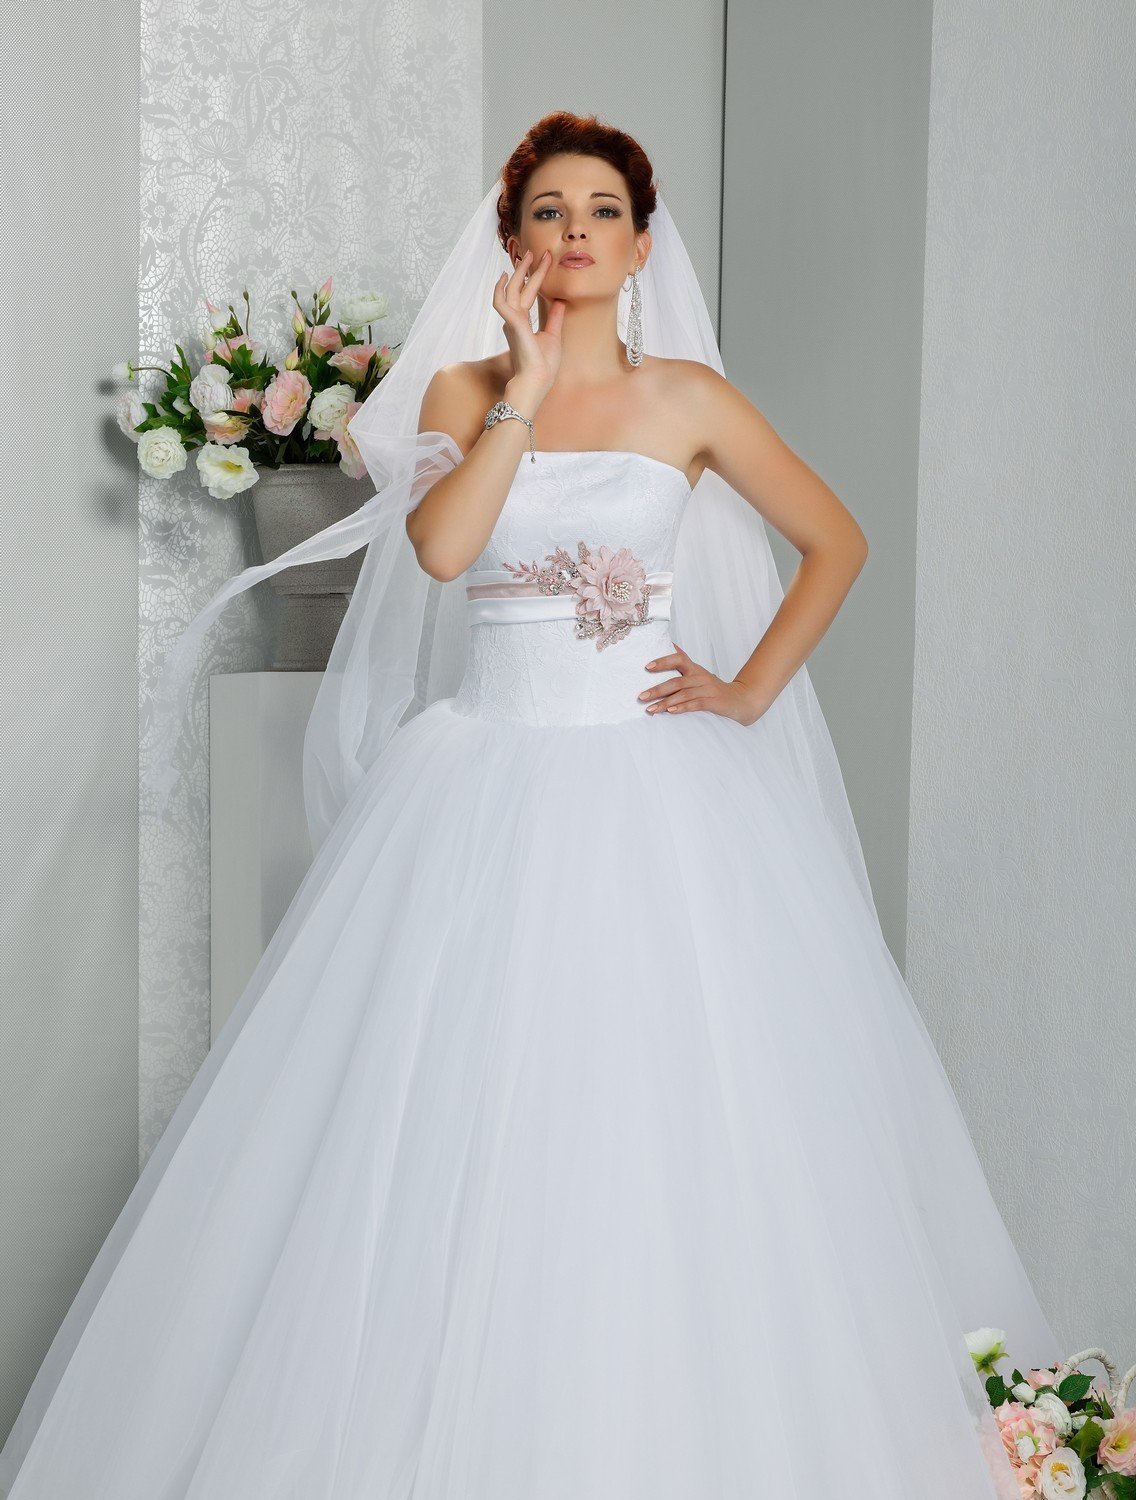 Недорогие свадебные платья каталог